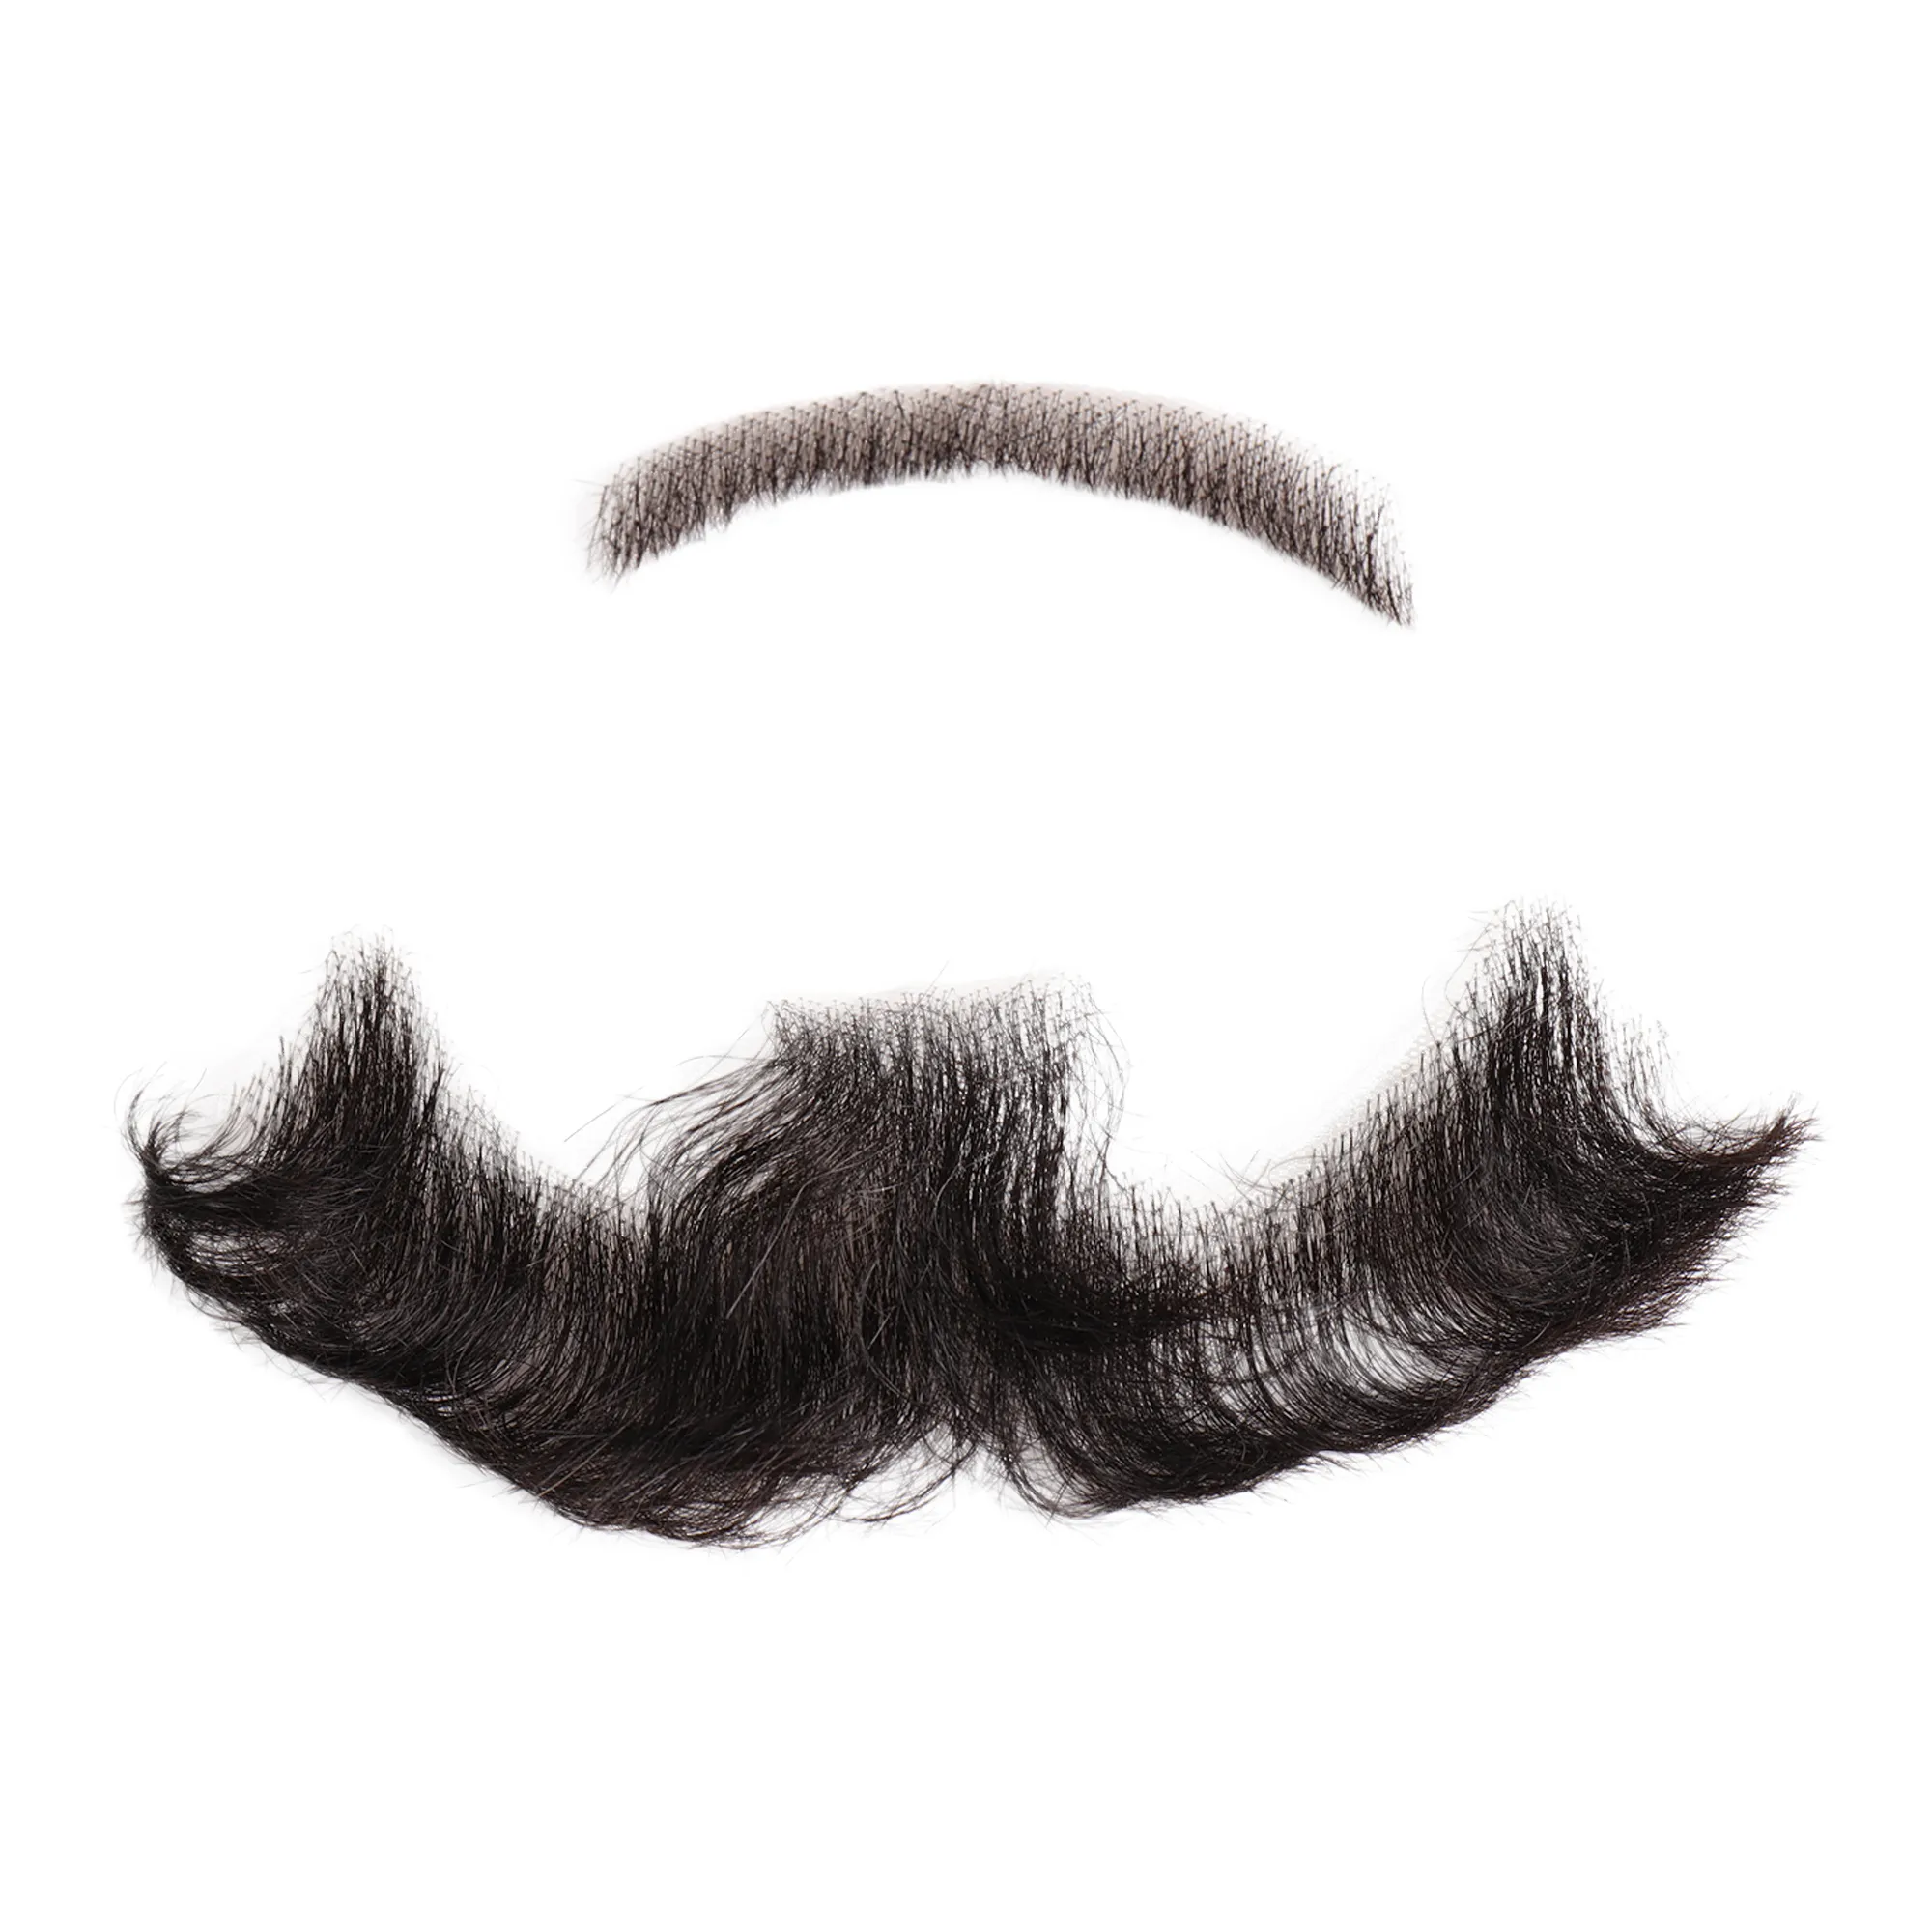 Allaosify Beard реквизит невидимые мужские поддельные бороды Реалистичные усы